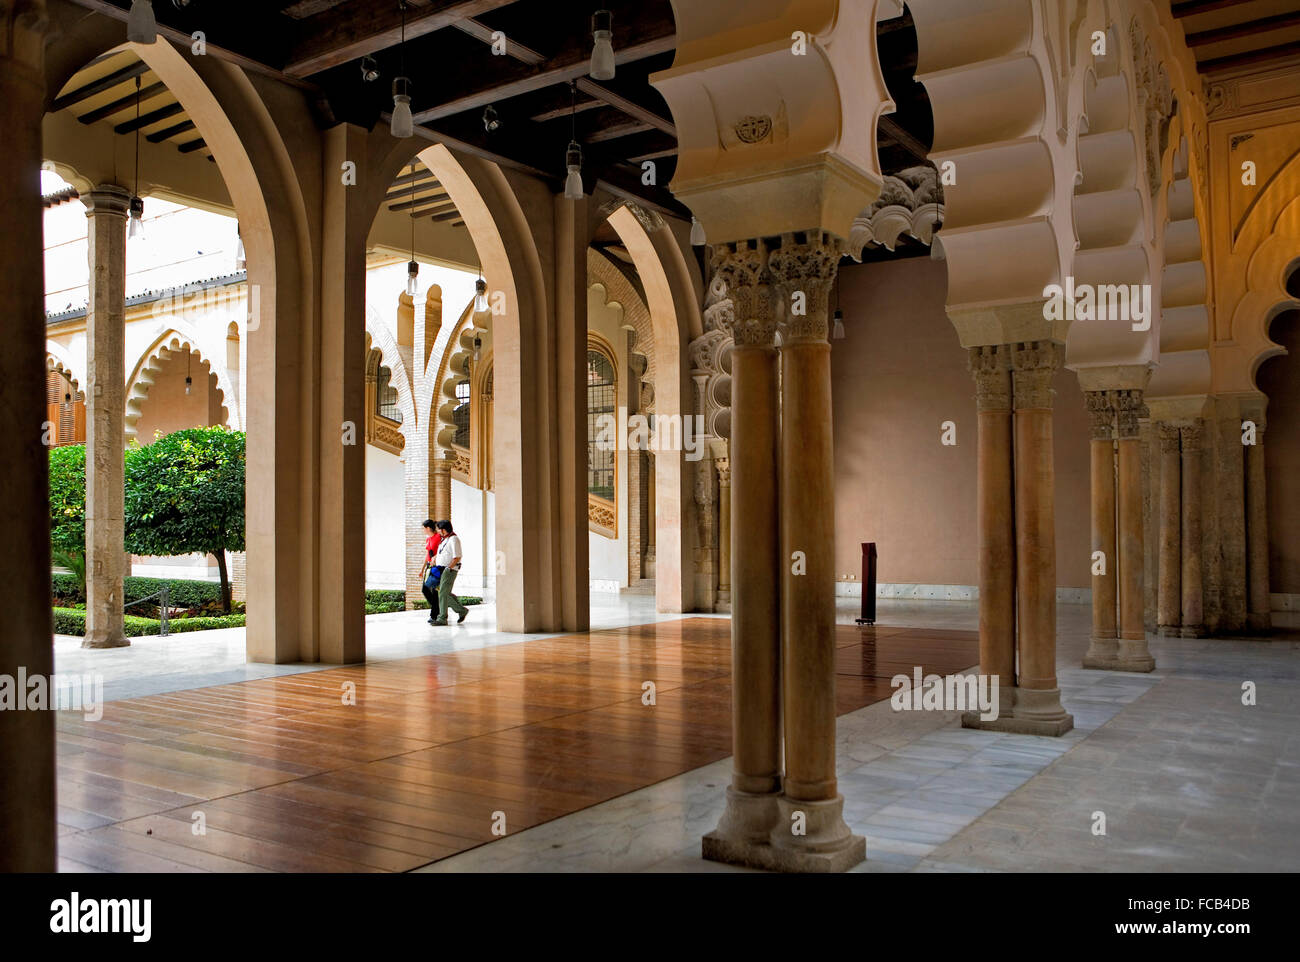 Zaragoza, Aragón, Spain: Courtyard of Santa Isabel. Arches in Pórtico Norte. Aljafería Palace. Stock Photo